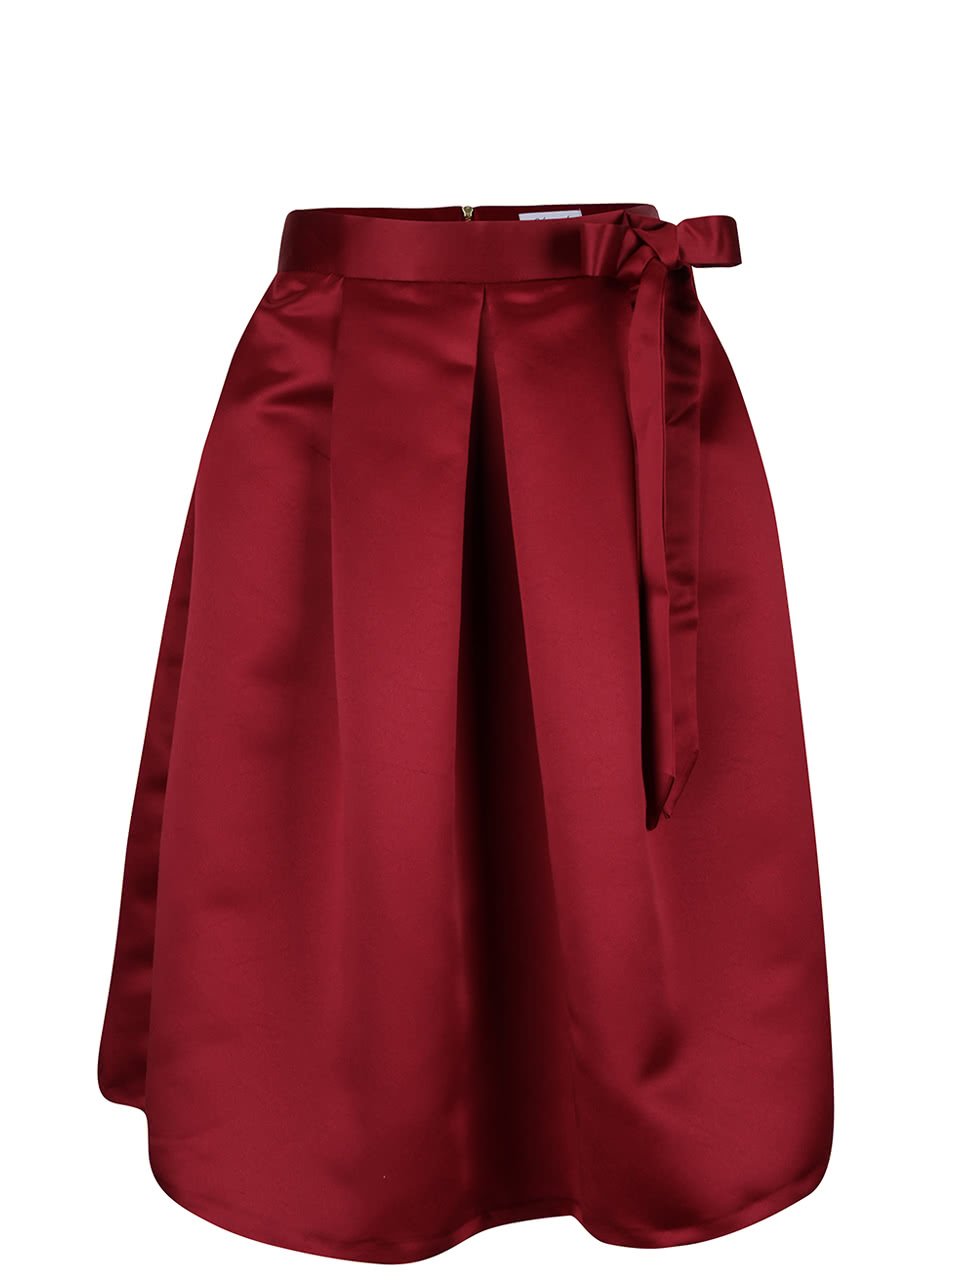 Vínová sukně s mašlí a kapsami Closet